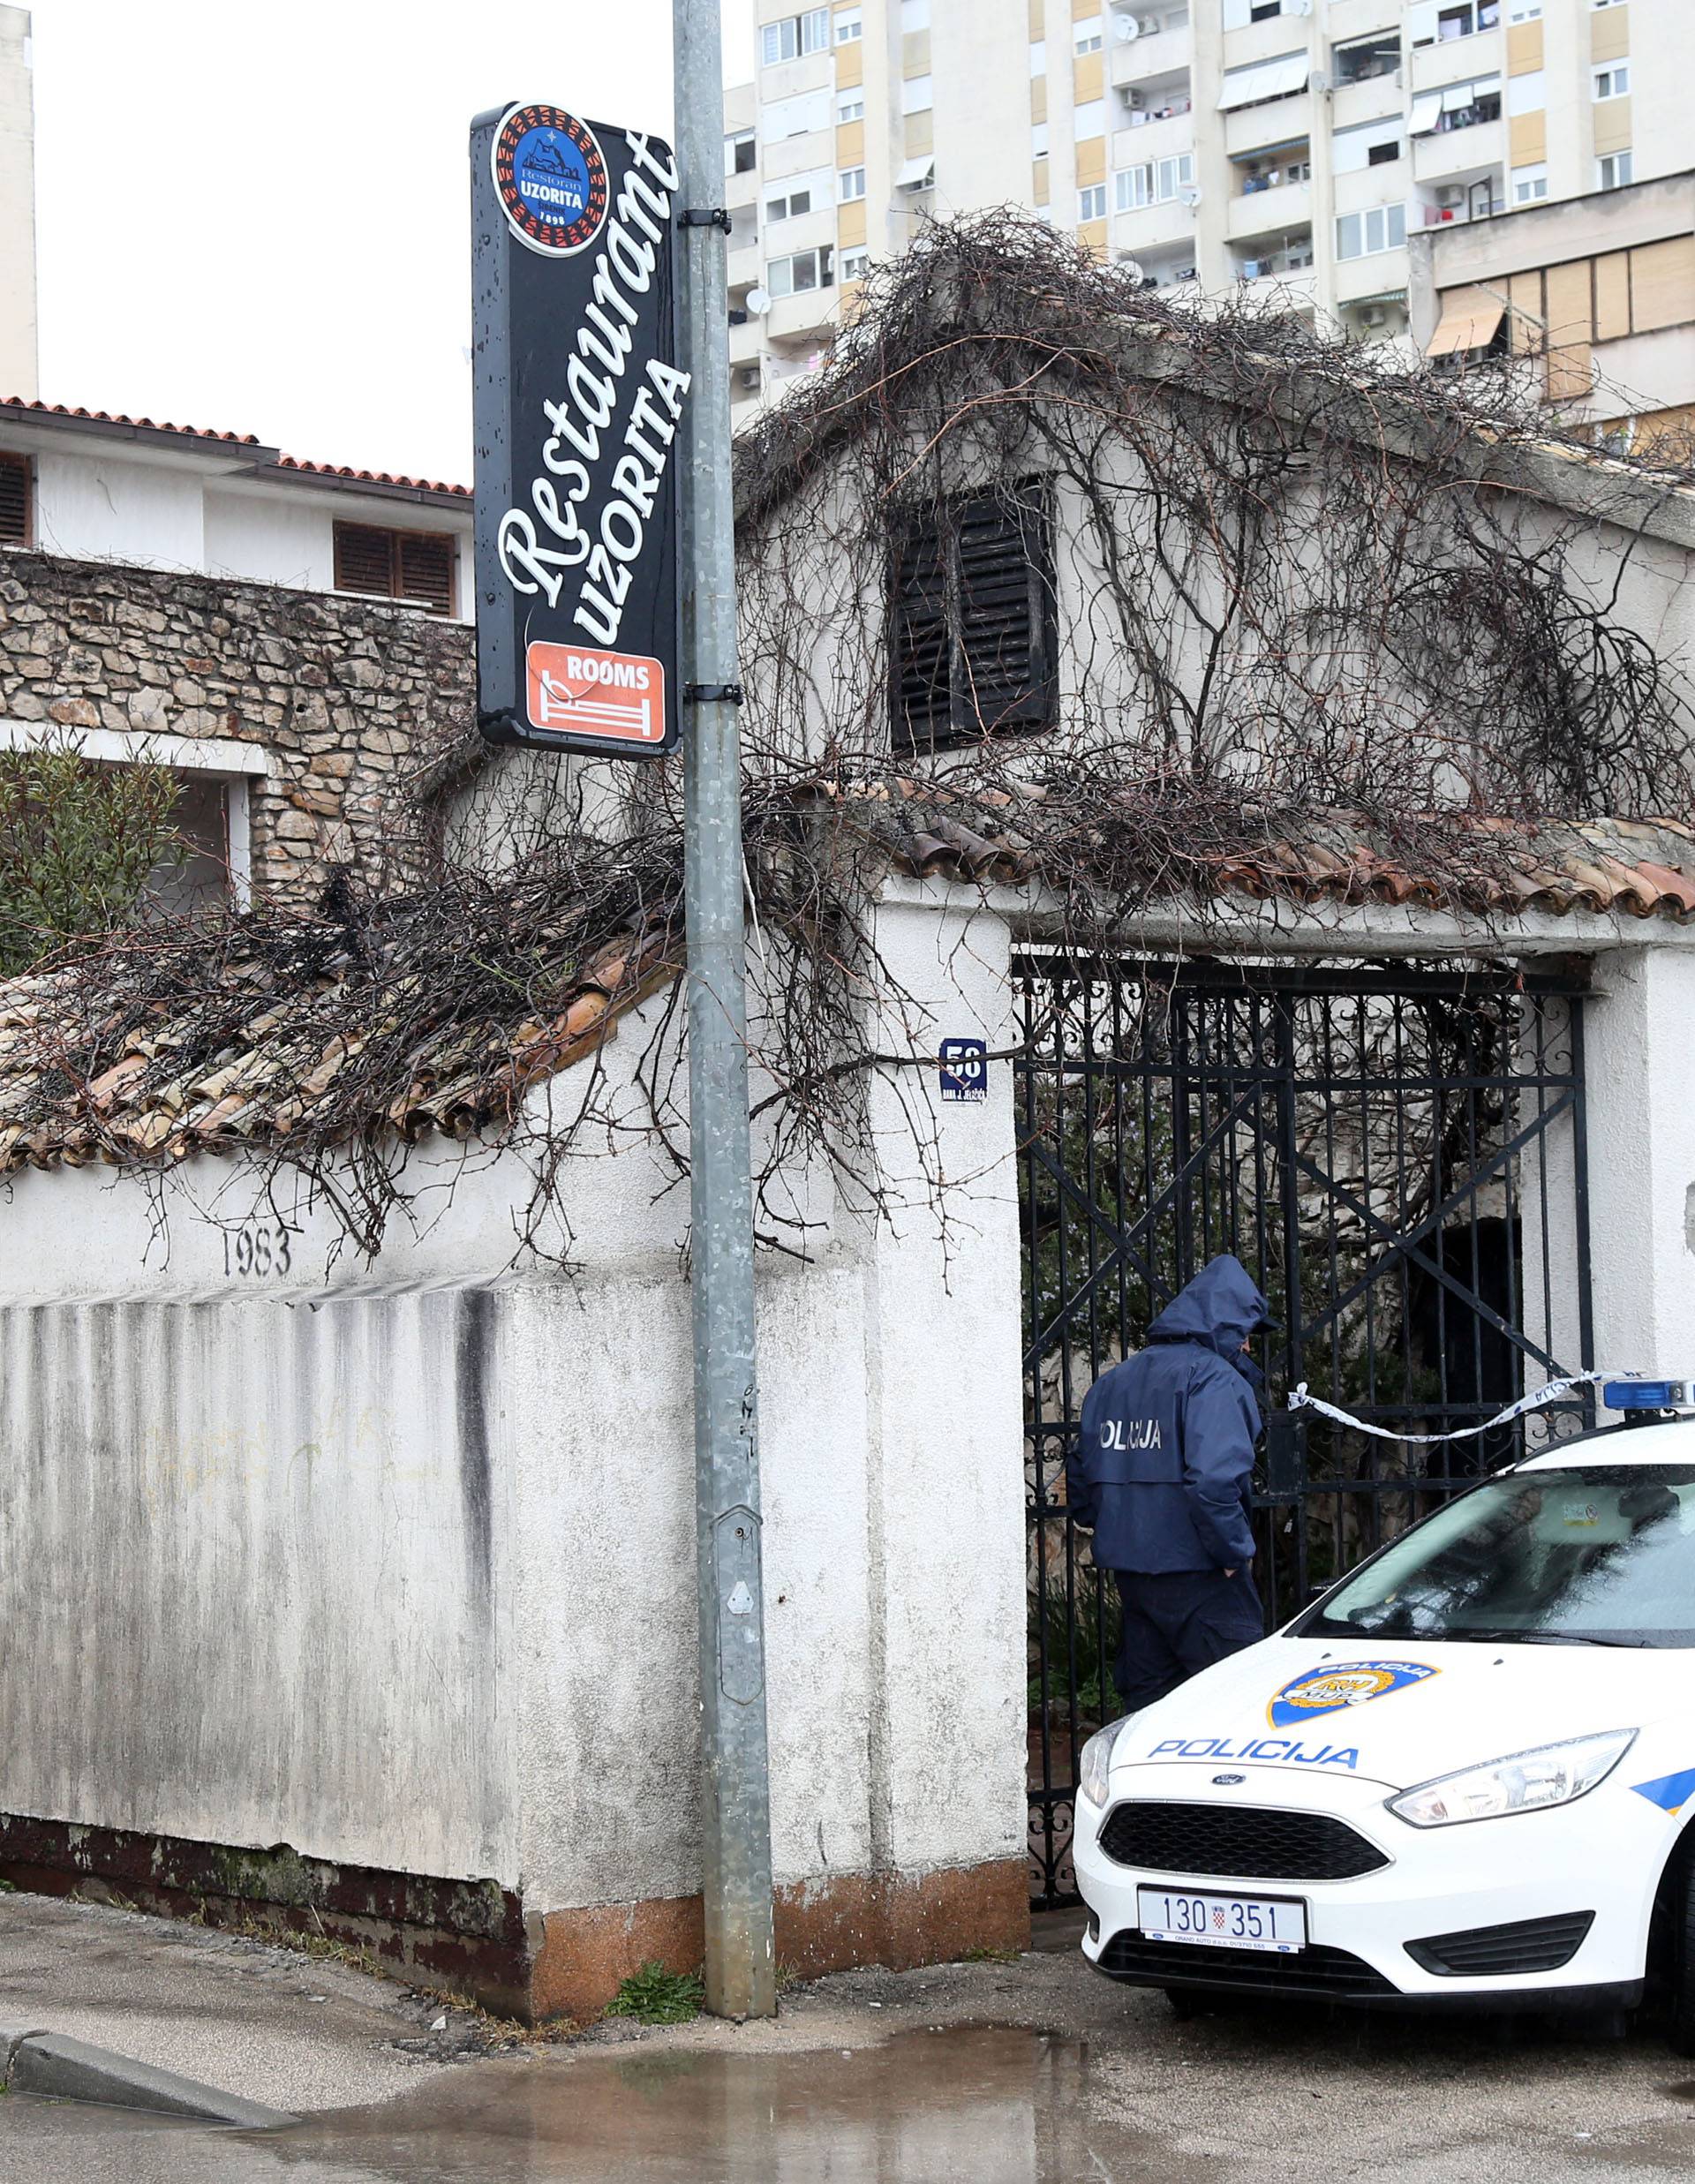 Ručna bomba 'kašikara' bačena u dvorište šibenskog restorana